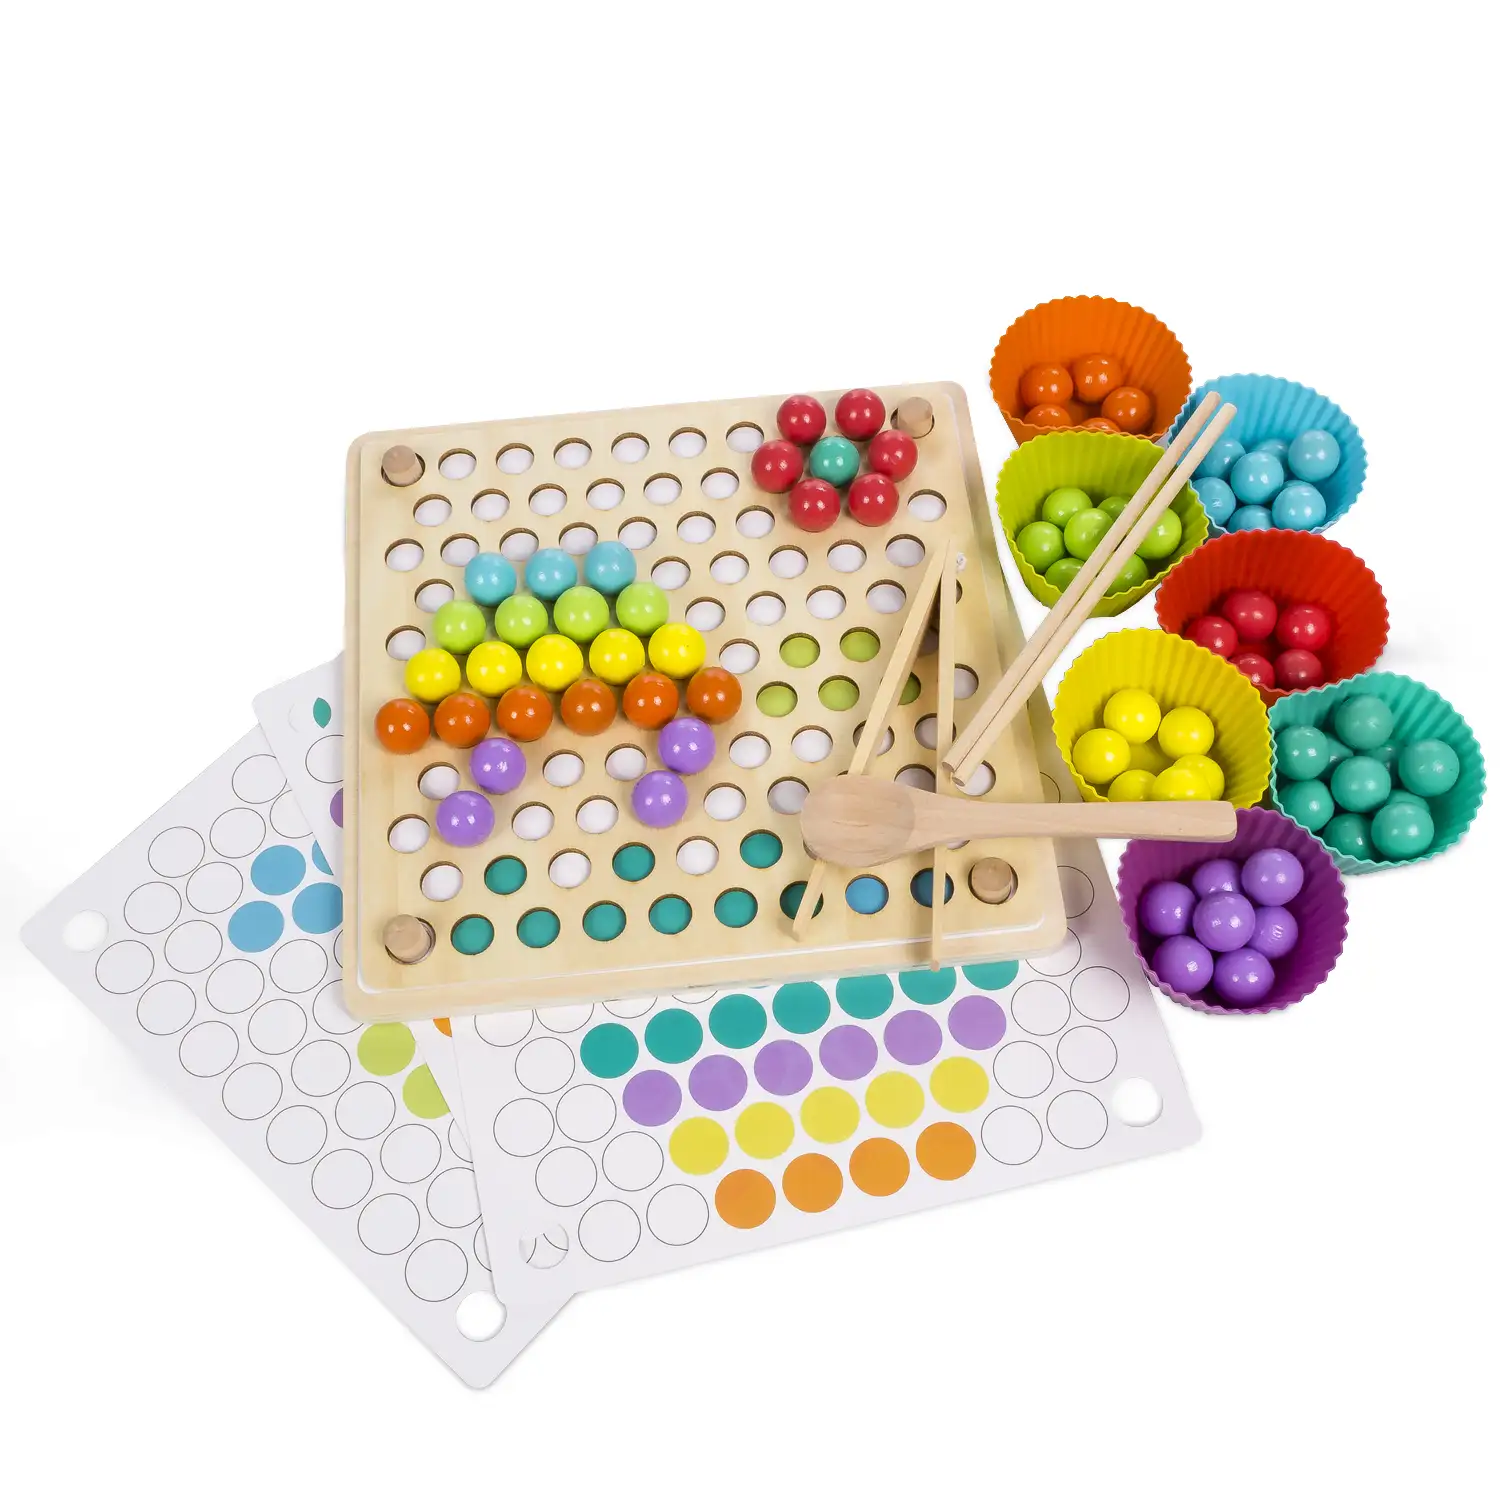 Tablero Montessori de madera para crear de mosaicos multicolor. Crea dibujos de forma libre o siguiendo los patrones.